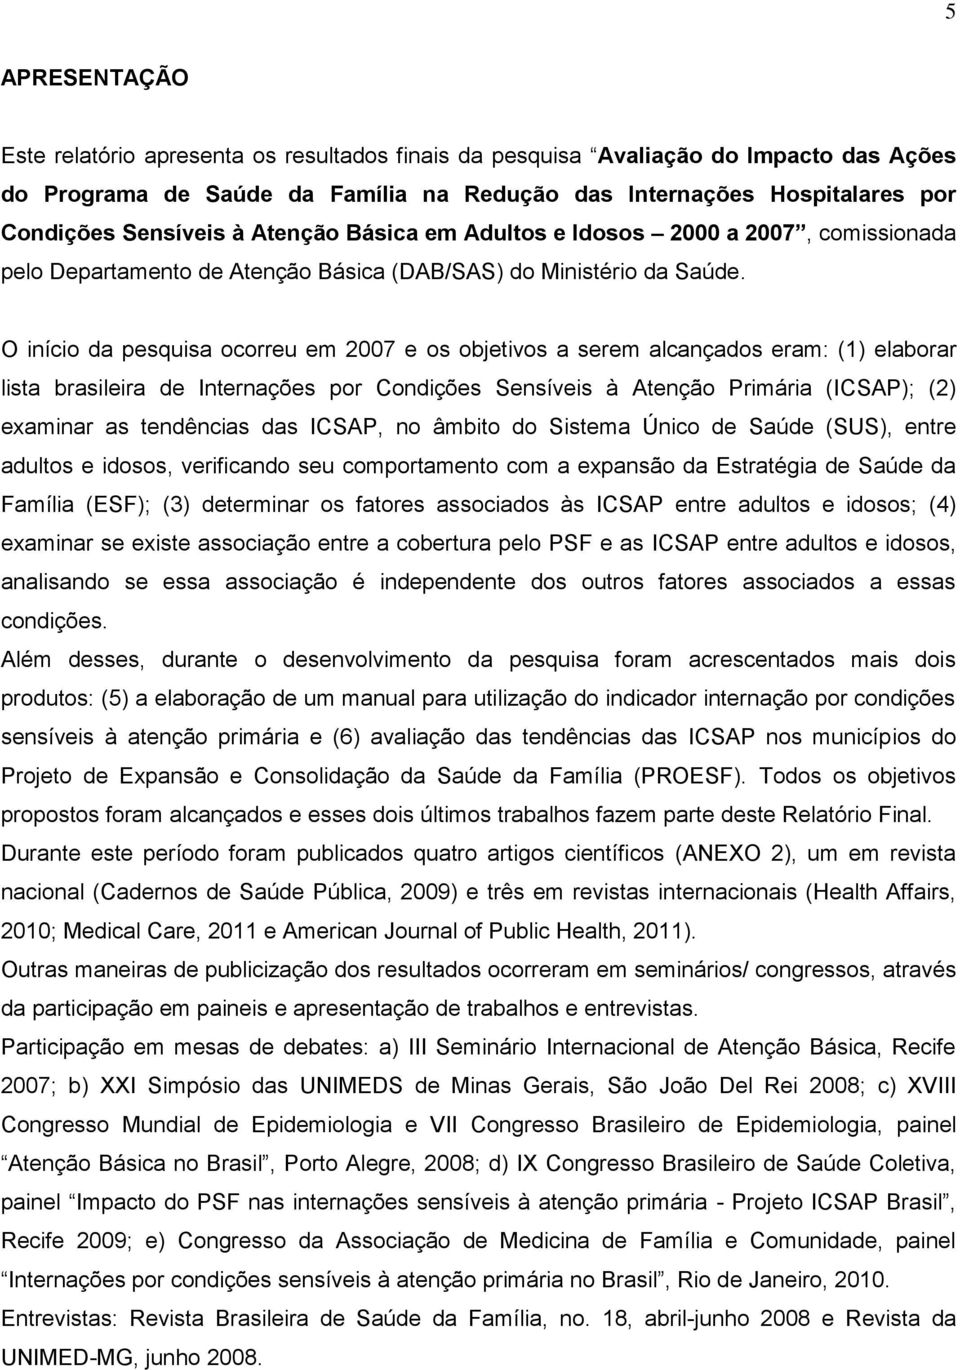 O início da pesquisa ocorreu em 2007 e os objetivos a serem alcançados eram: (1) elaborar lista brasileira de Internações por Condições Sensíveis à Atenção Primária (ICSAP); (2) examinar as